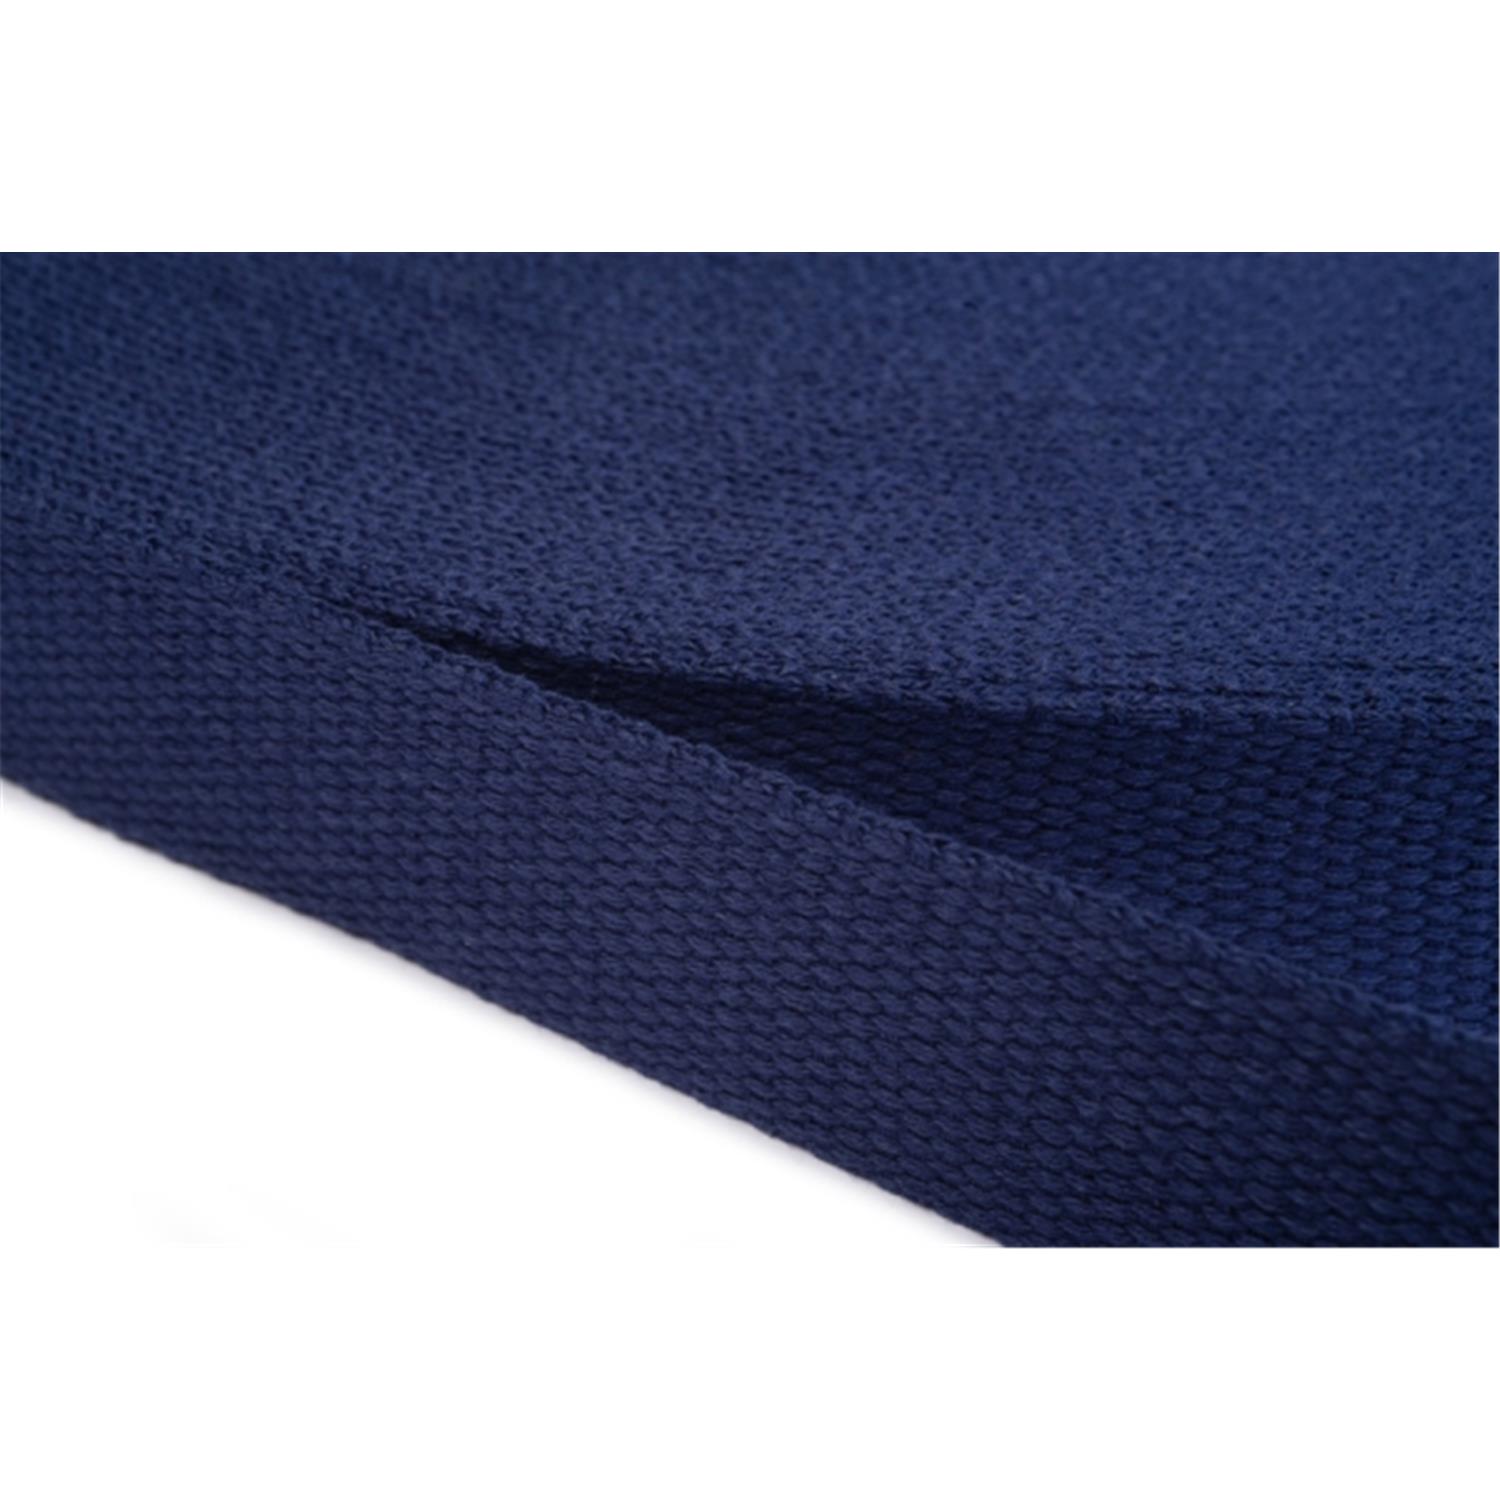 Gurtband aus Baumwolle 40mm in 20 Farben 13 - dunkelblau 6 Meter